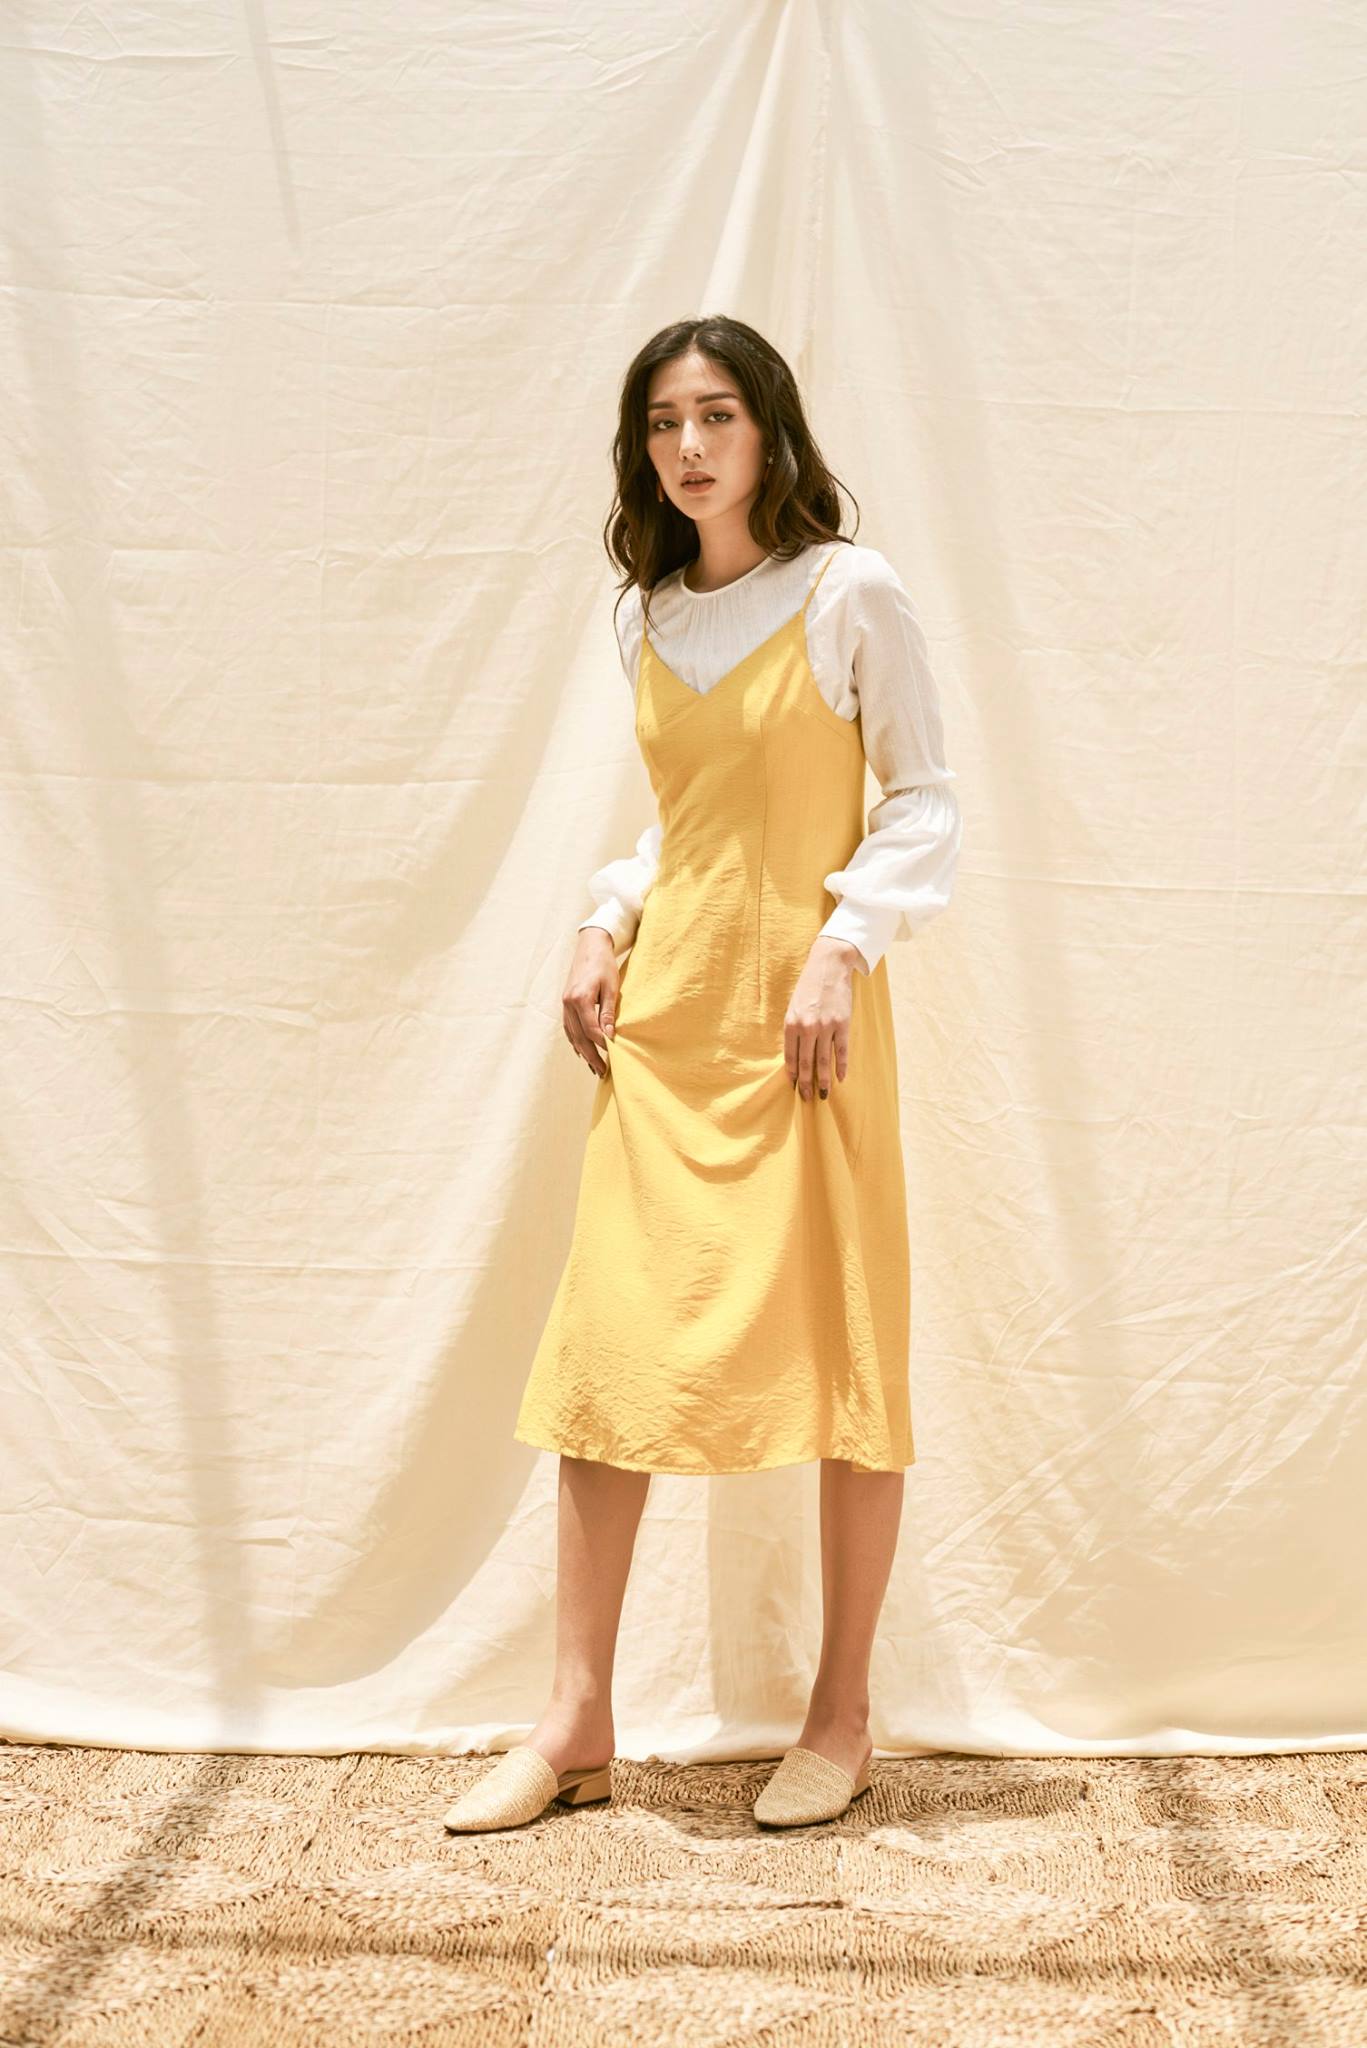 Yellow Cami Dress